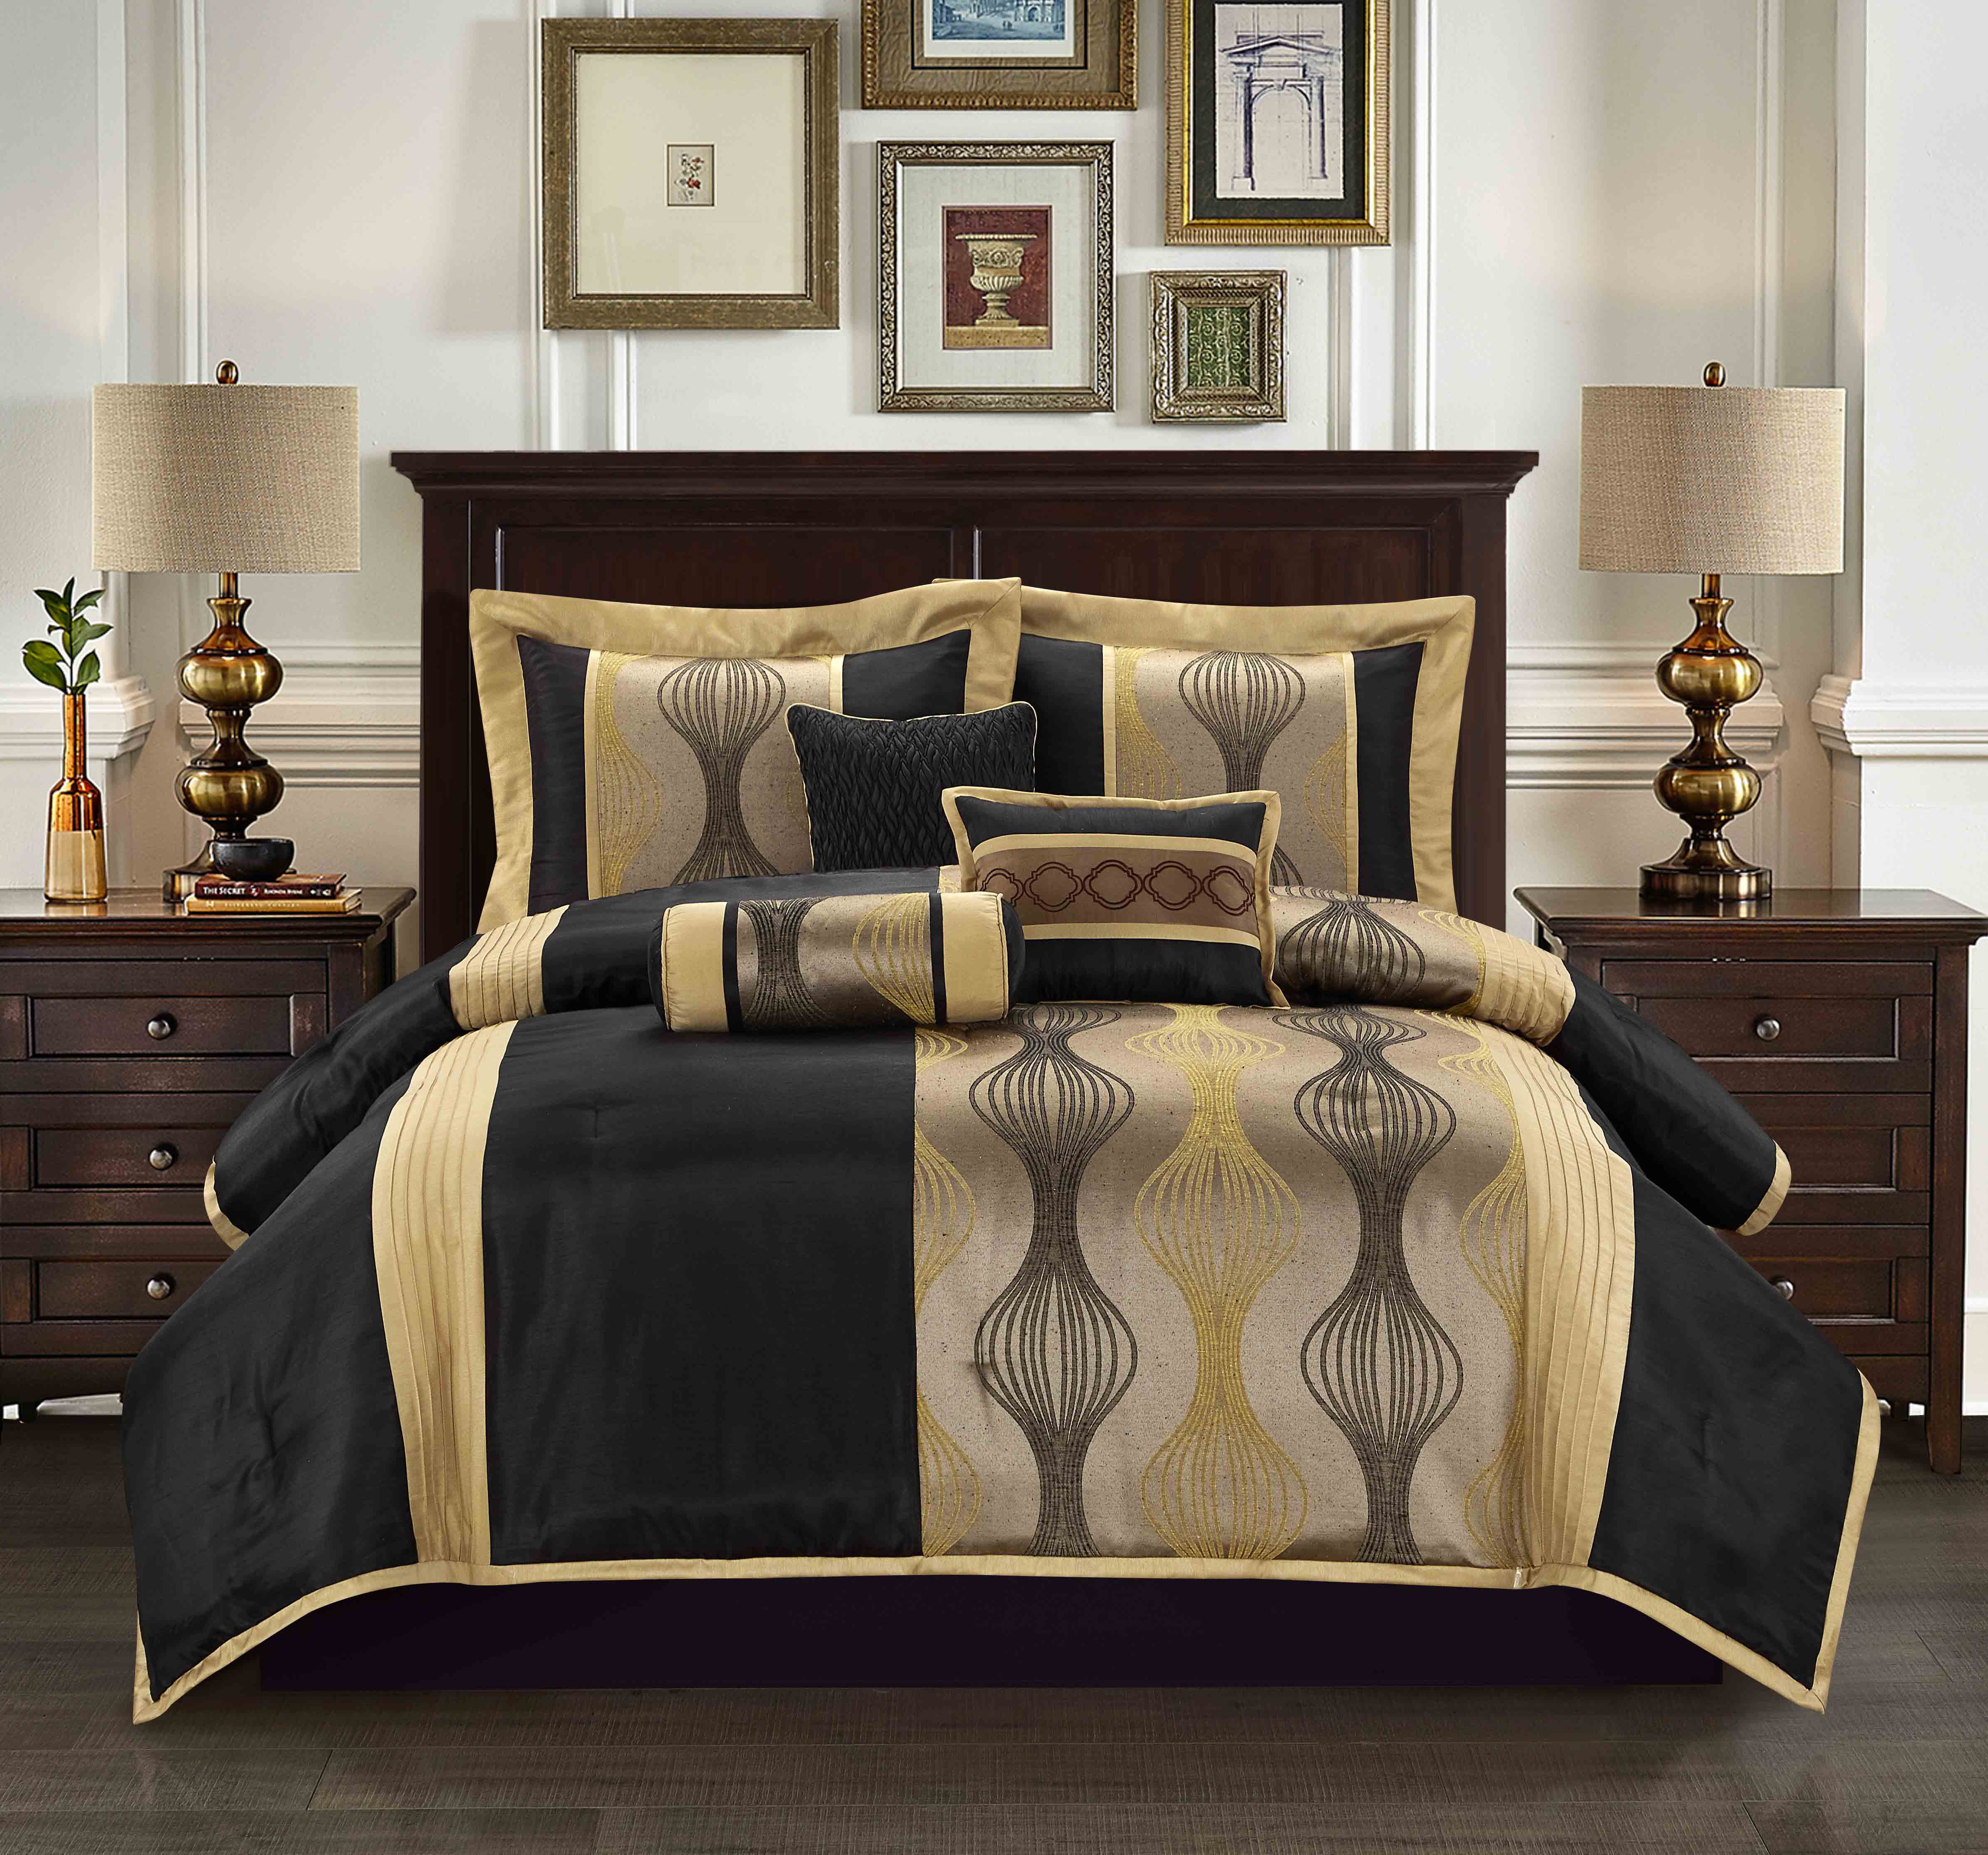 Bed comforter sets